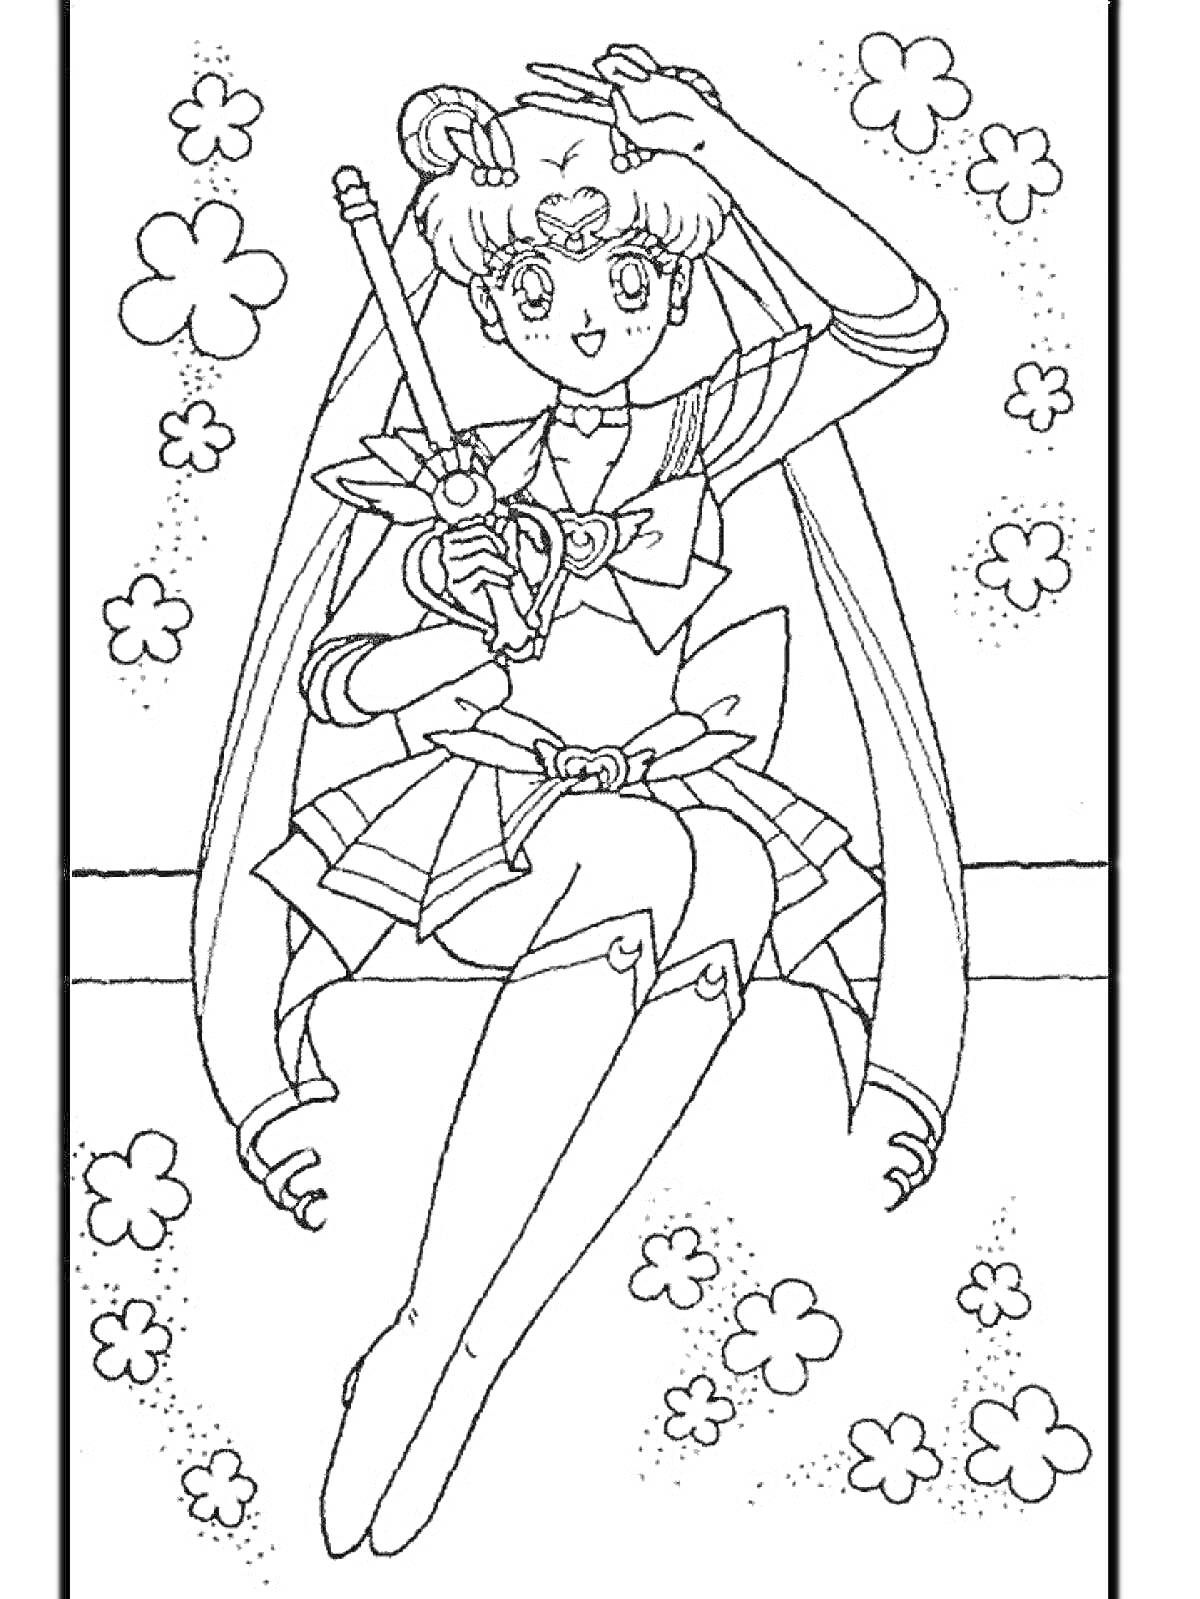 Раскраска Девочка в костюме с луной и палочкой, сидящая на лавочке с цветочками вокруг